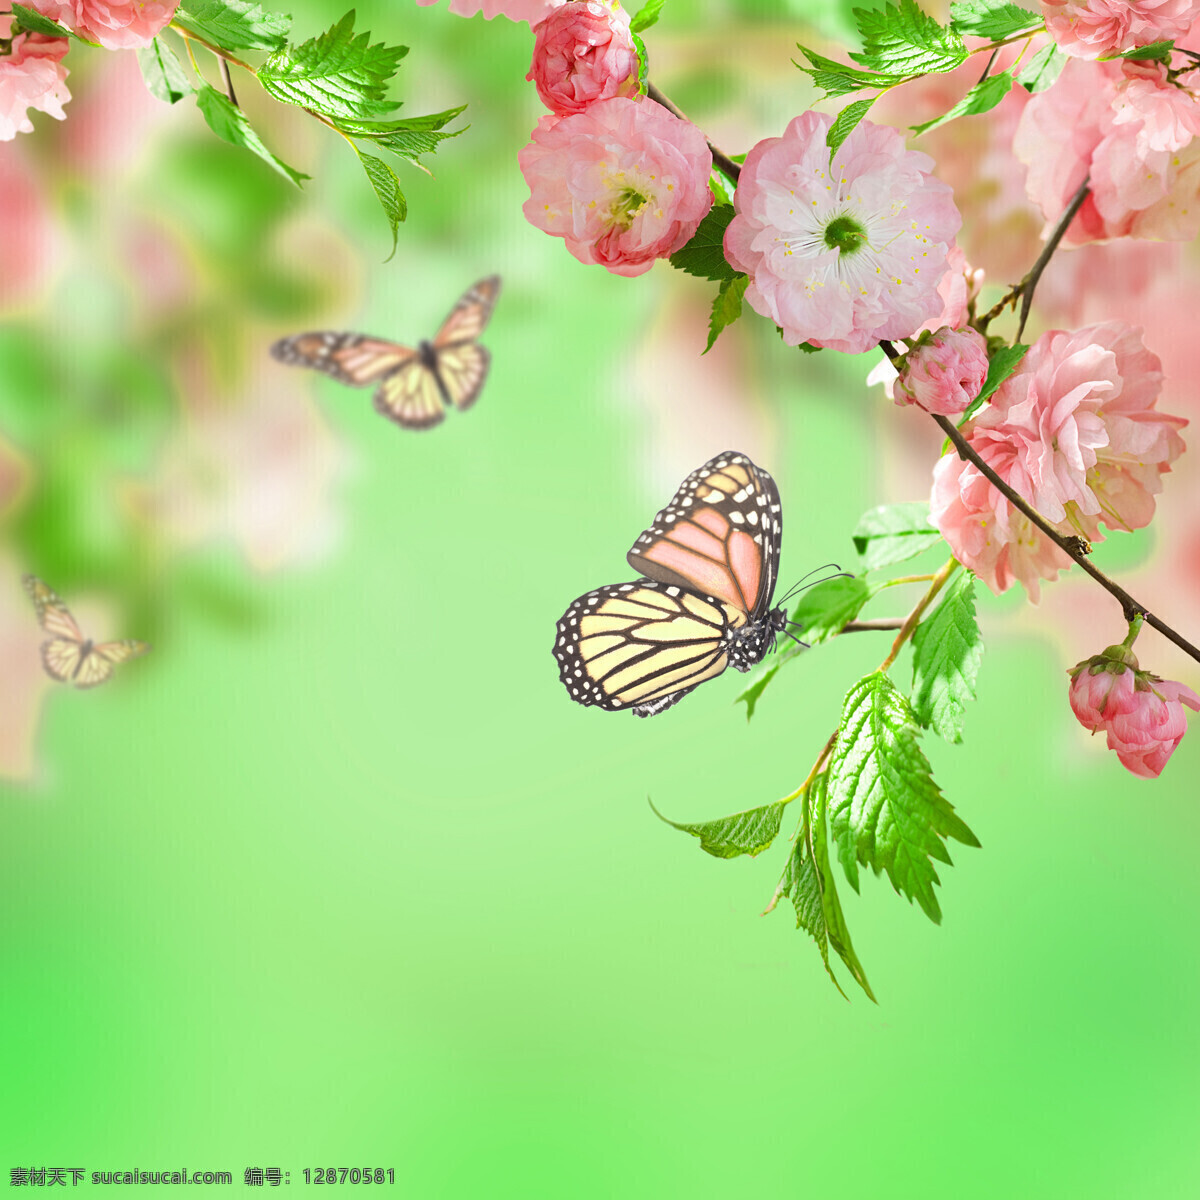 鲜花 蝴蝶 梦幻 背景 素材图片 梦幻背景 花朵 叶子 植物 动物 花草树木 生物世界